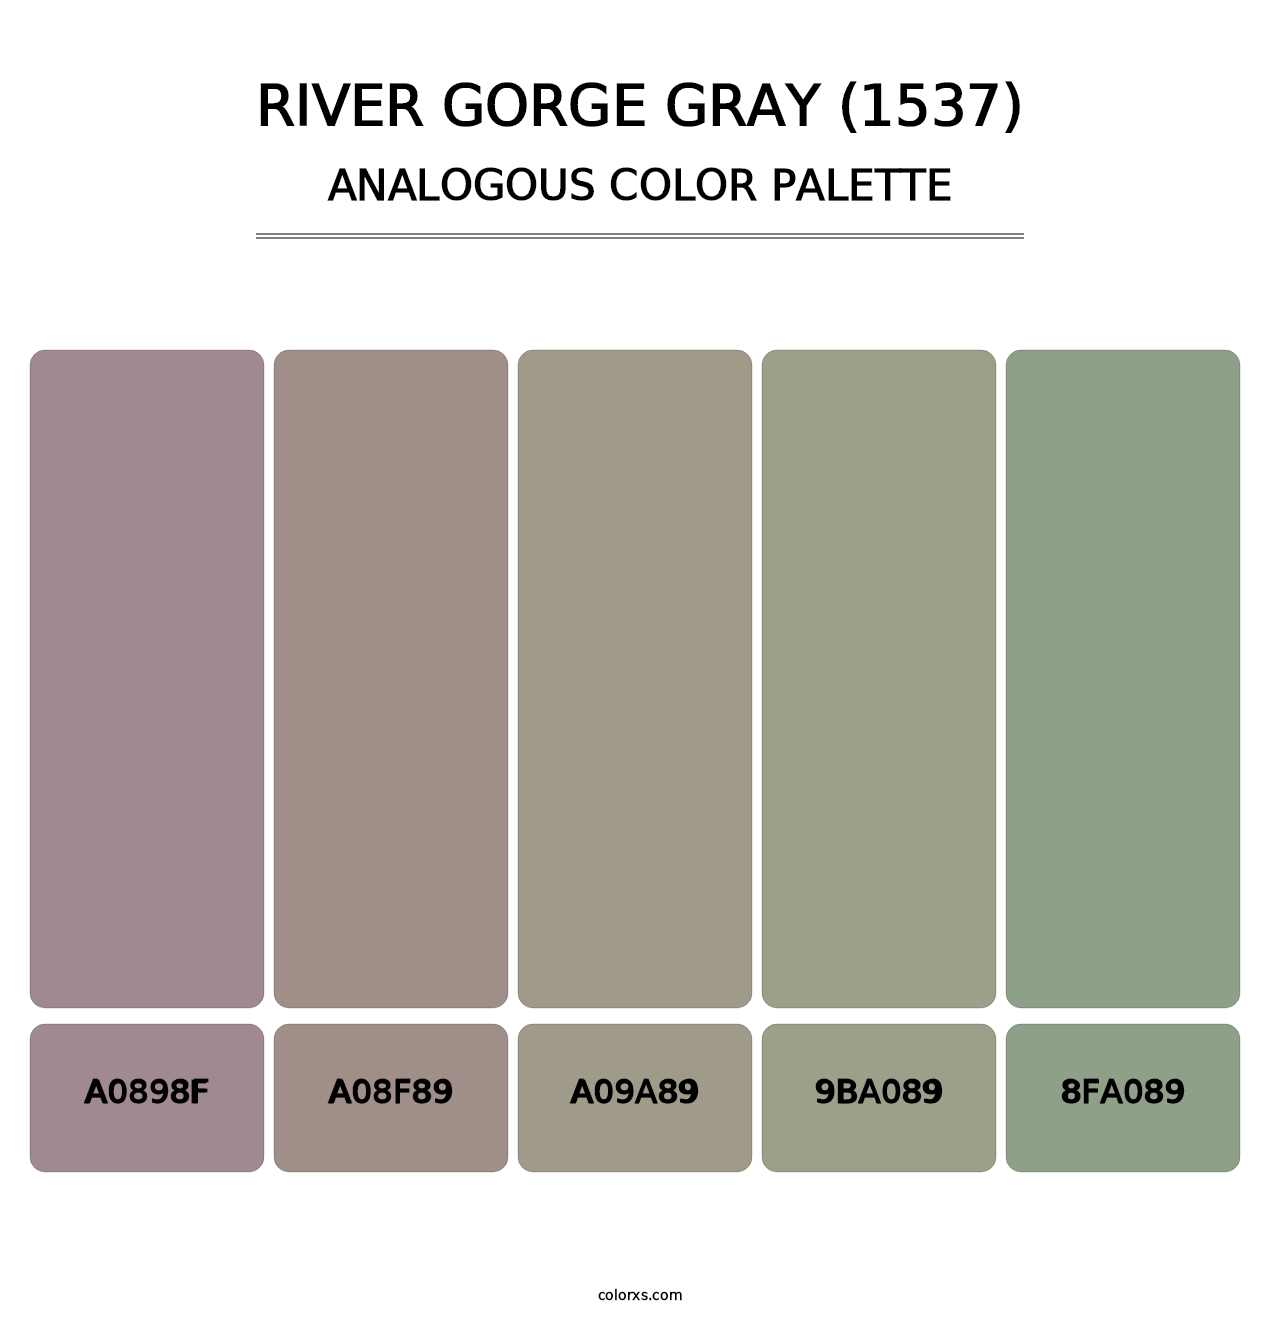 River Gorge Gray (1537) - Analogous Color Palette